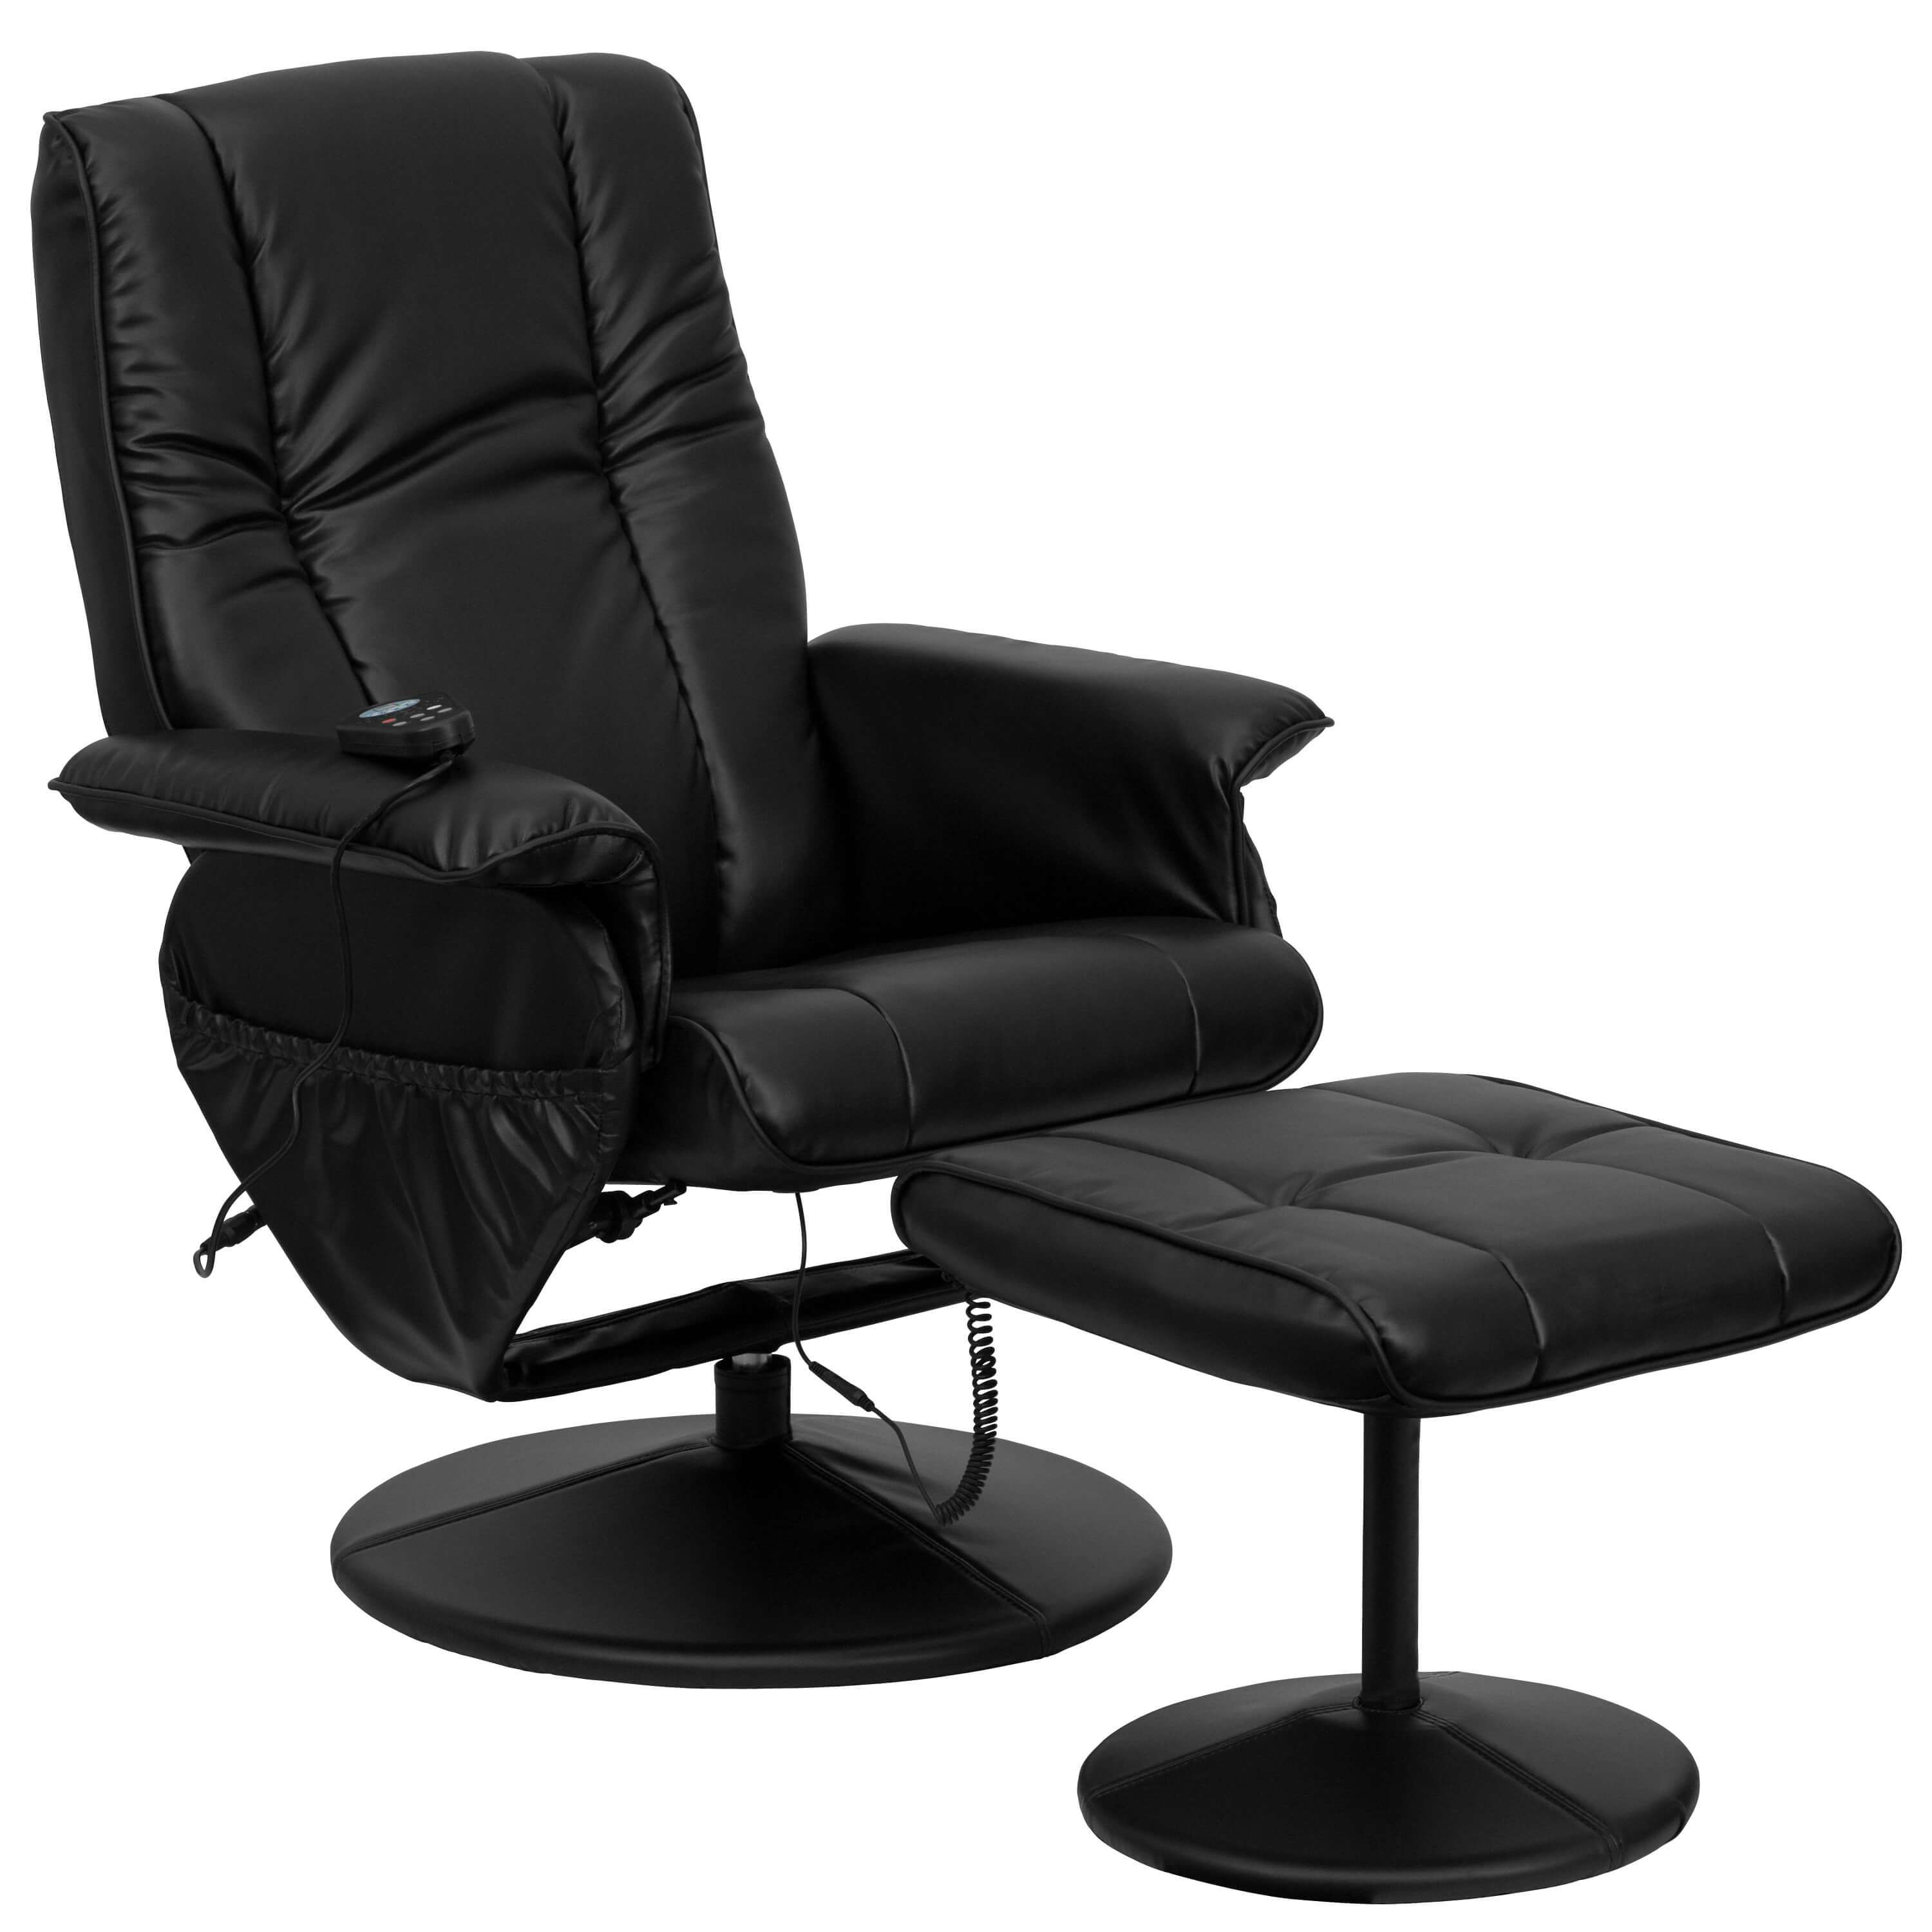 contemporary-recliner-recliner-massage-chair.jpg